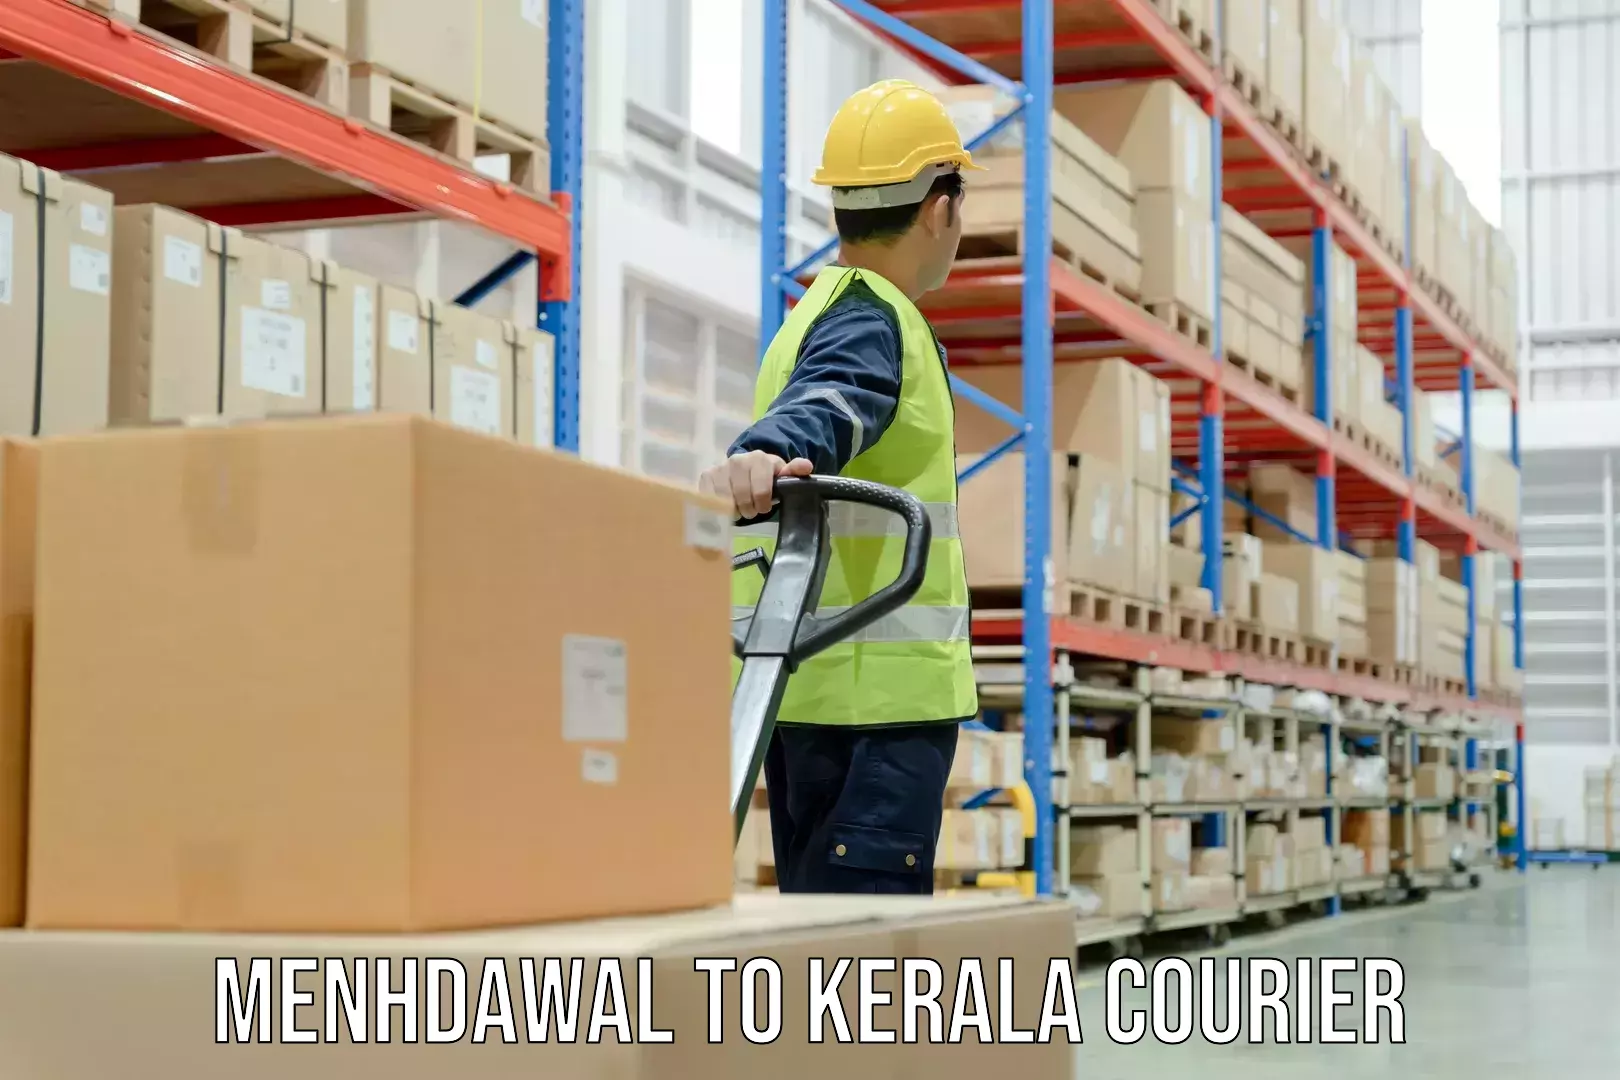 Global shipping solutions Menhdawal to Panthalam